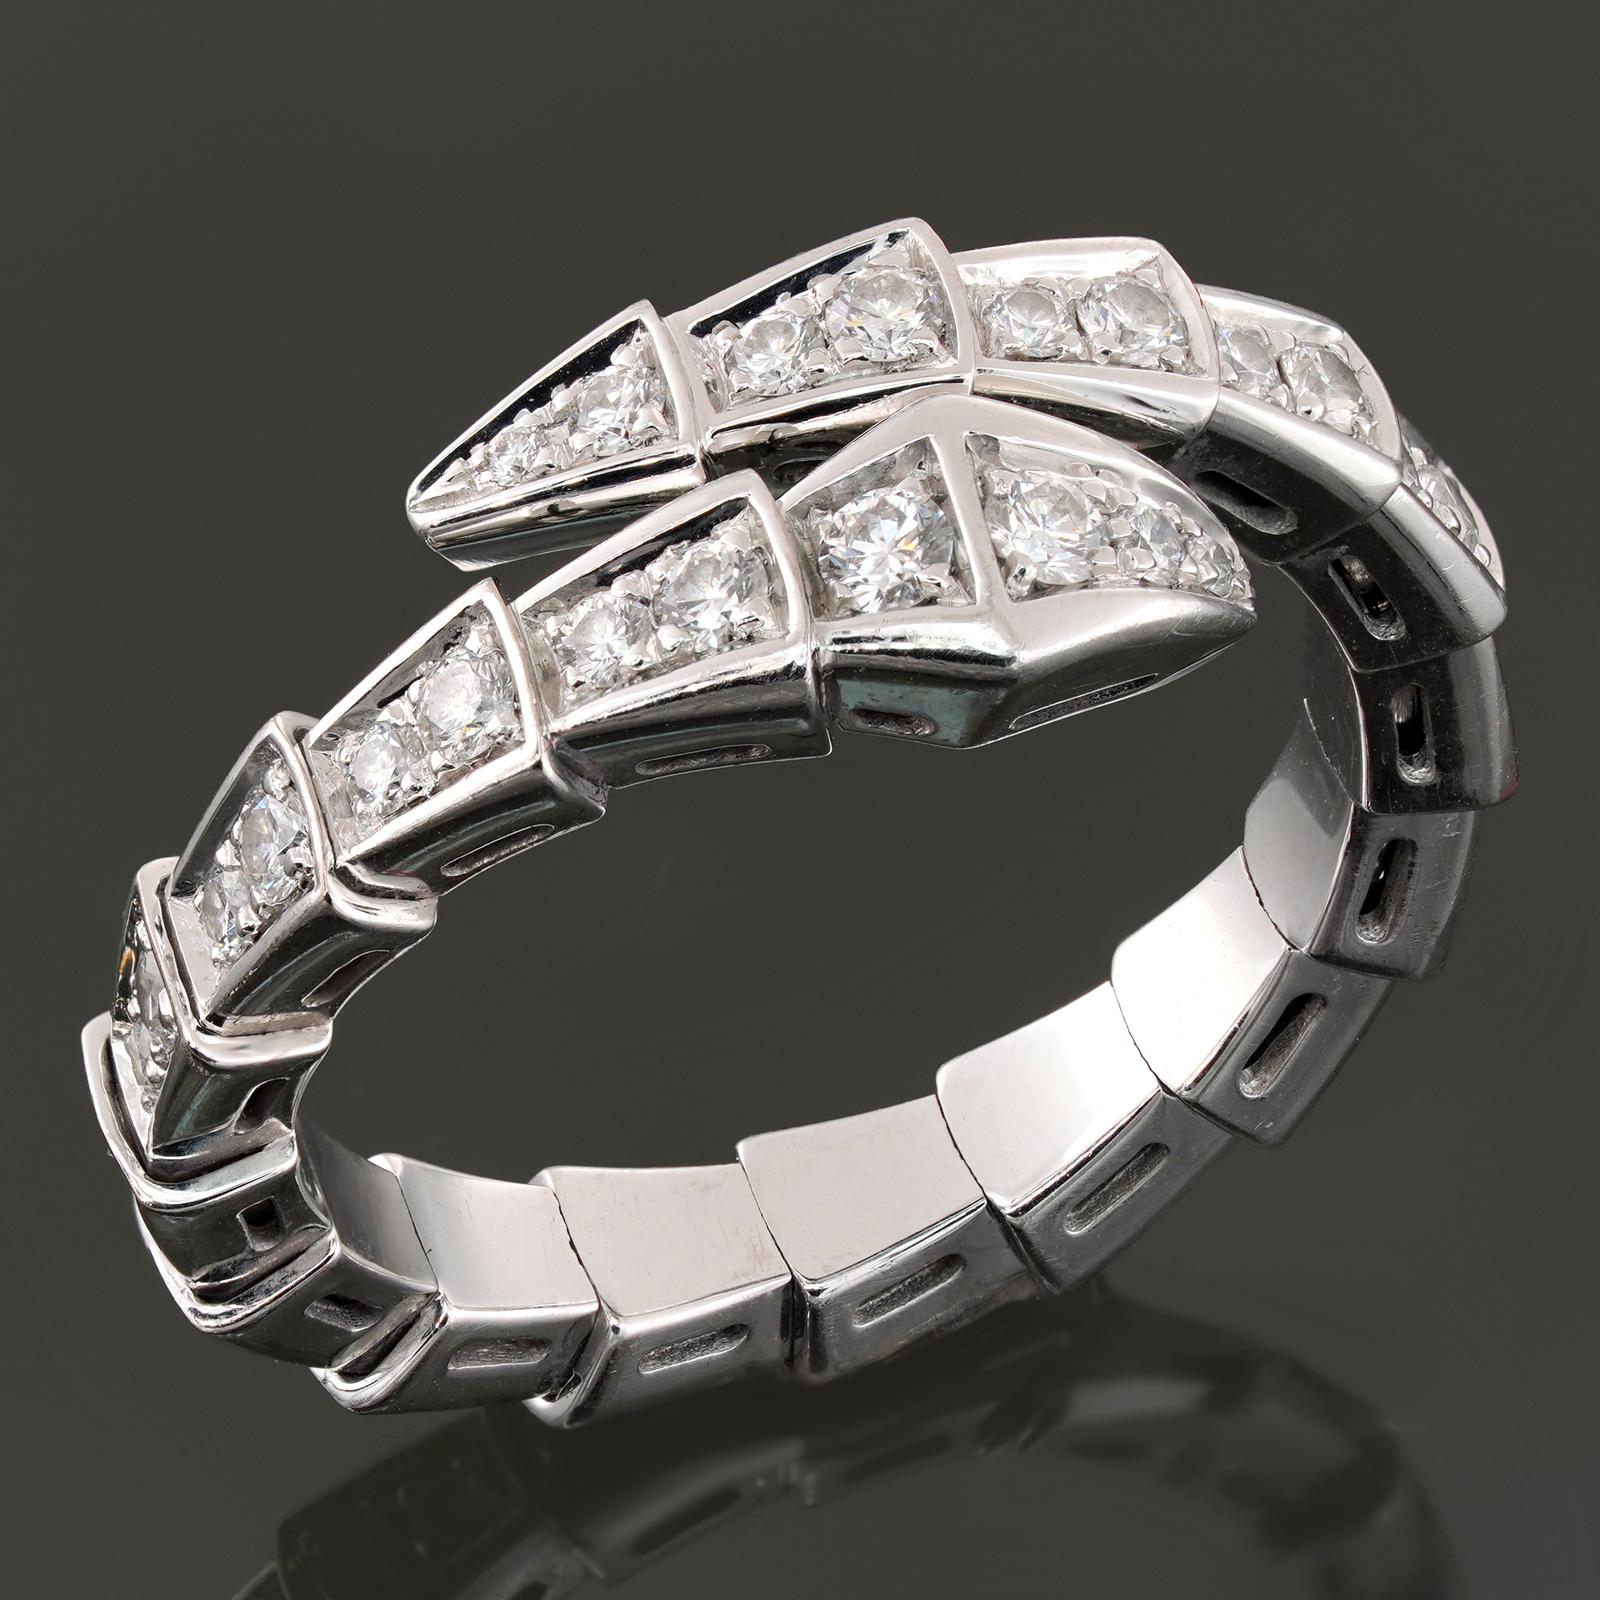 Cette magnifique bague Bvlgari de la collection emblématique Serpenti Viper présente une double rangée de diamants en or blanc 18 carats, sertis de diamants ronds D-E-F VVS1-VVS2 de taille brillant. La bague est flexible pour les tailles 6 3/4 à 7